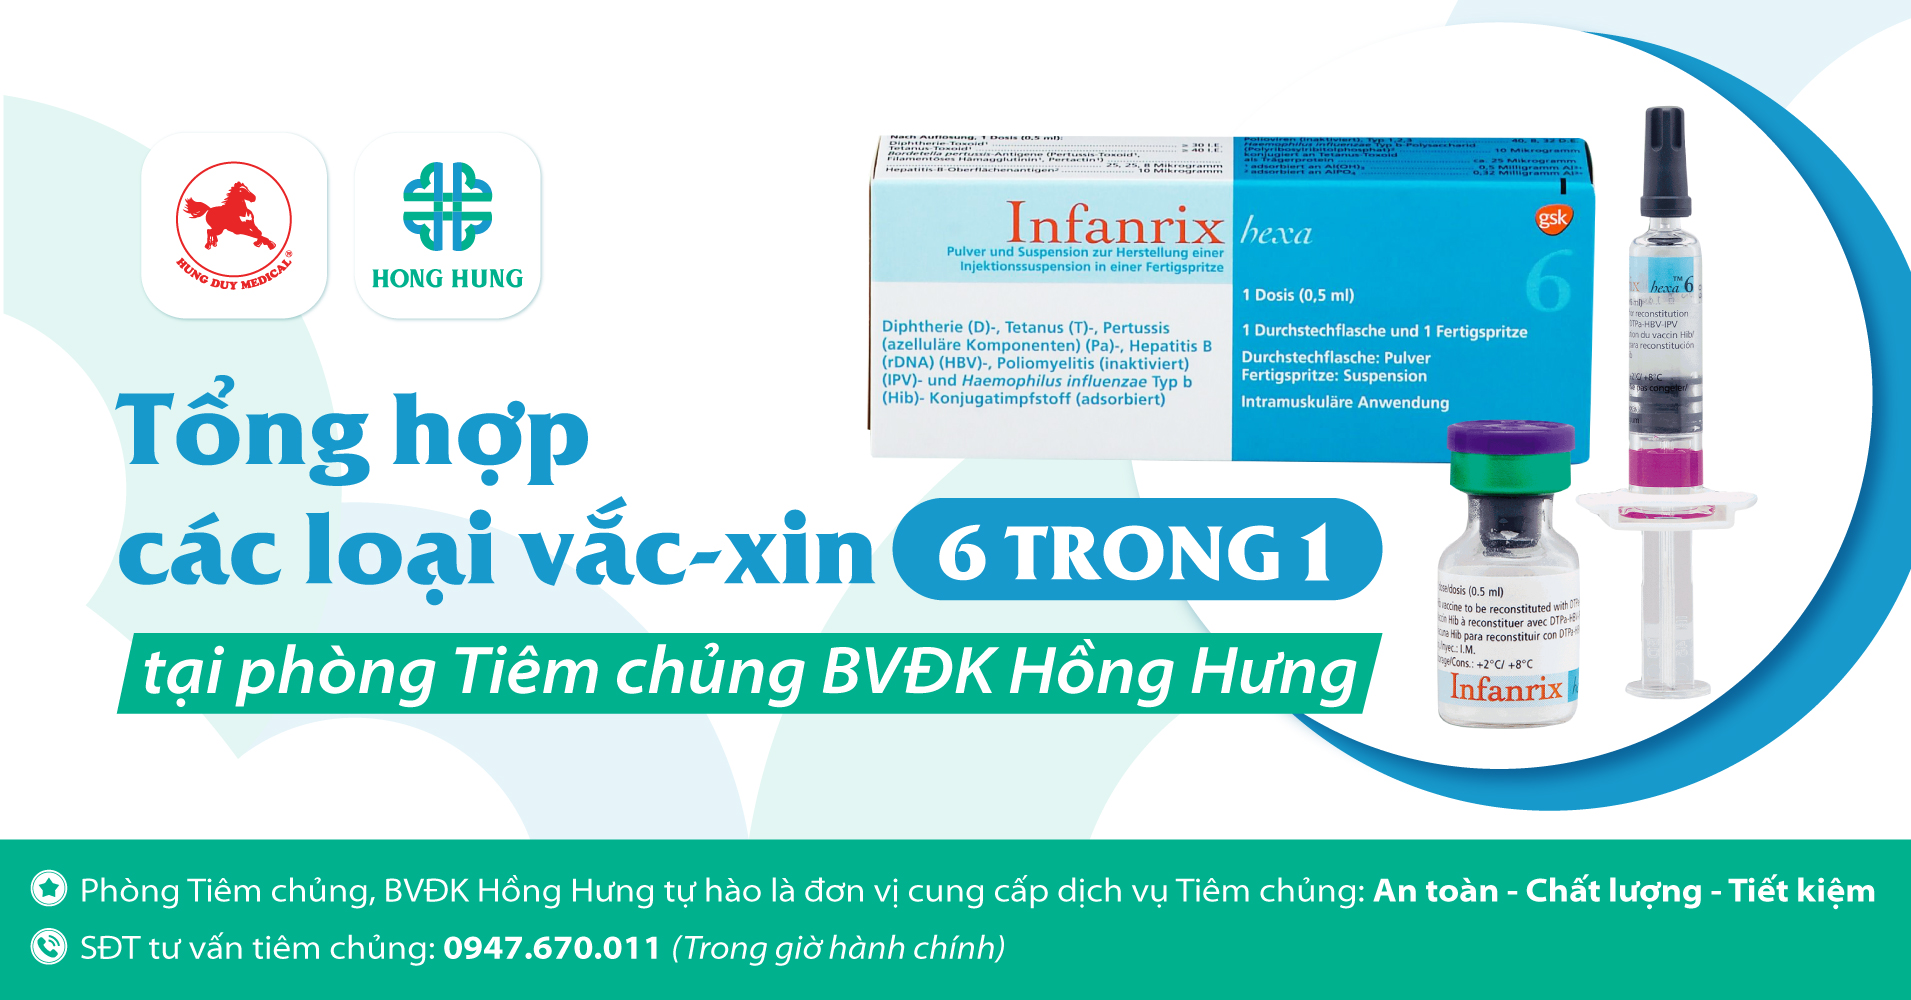 [Tổng hợp] các loại vắc-xin 6 trong 1 tại phòng Tiêm chủng BVĐK Hồng Hưng - Hong Hung Hospital